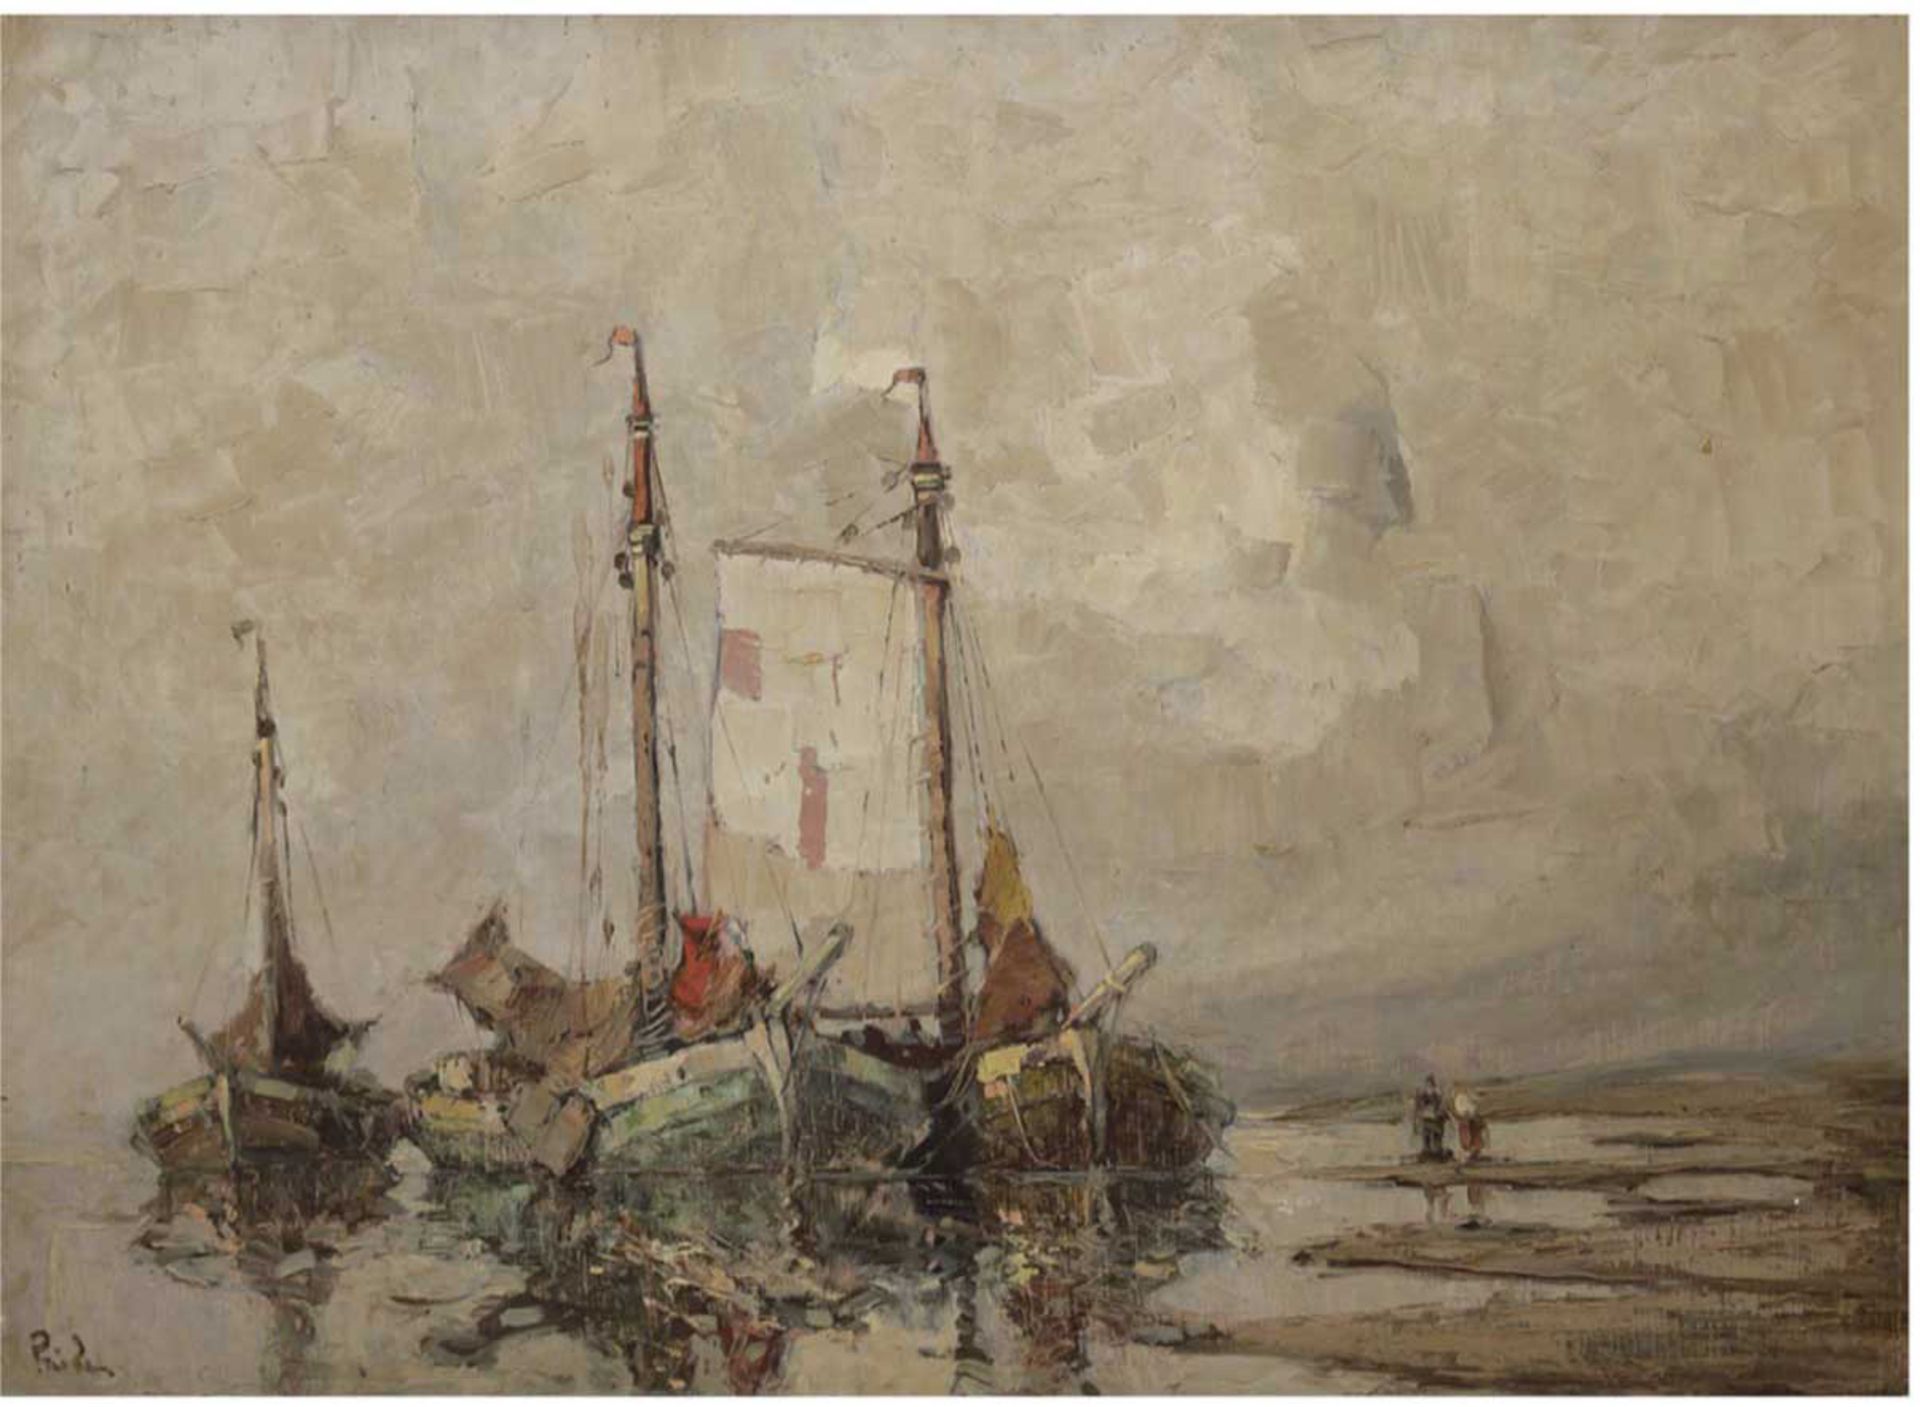 Priebe, Rudolf (1889-1964) "Fischkutter am Ufer", Öl/Hf., sign. u.l., mittig Farbverlauf,61x80 cm,